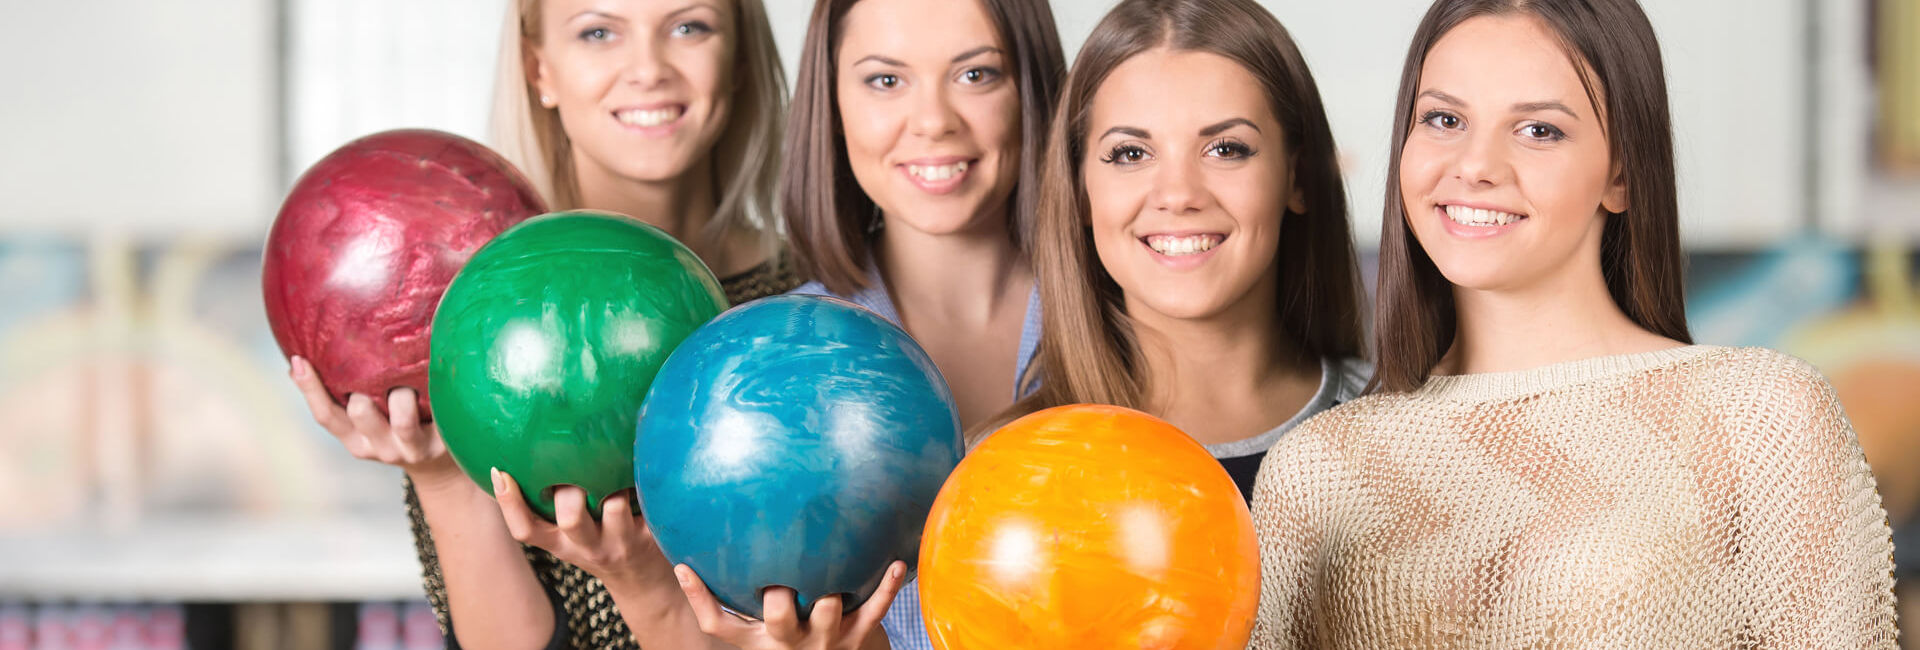 Vier schoolgaande meiden houden bowlingbal vast